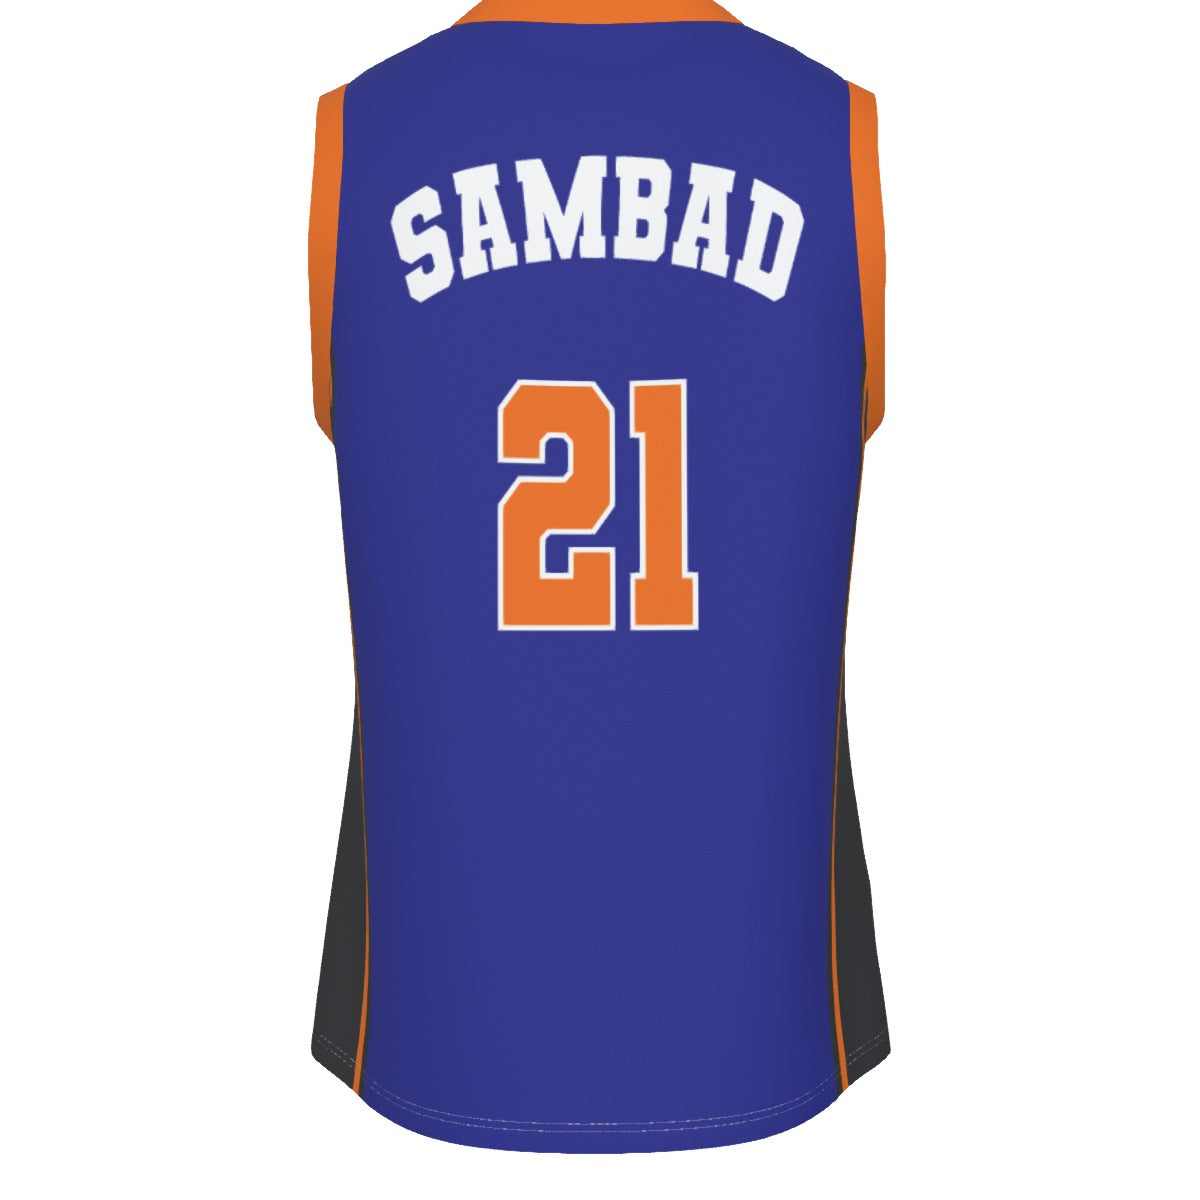 Custom NY BBALL Jersey - SamBad